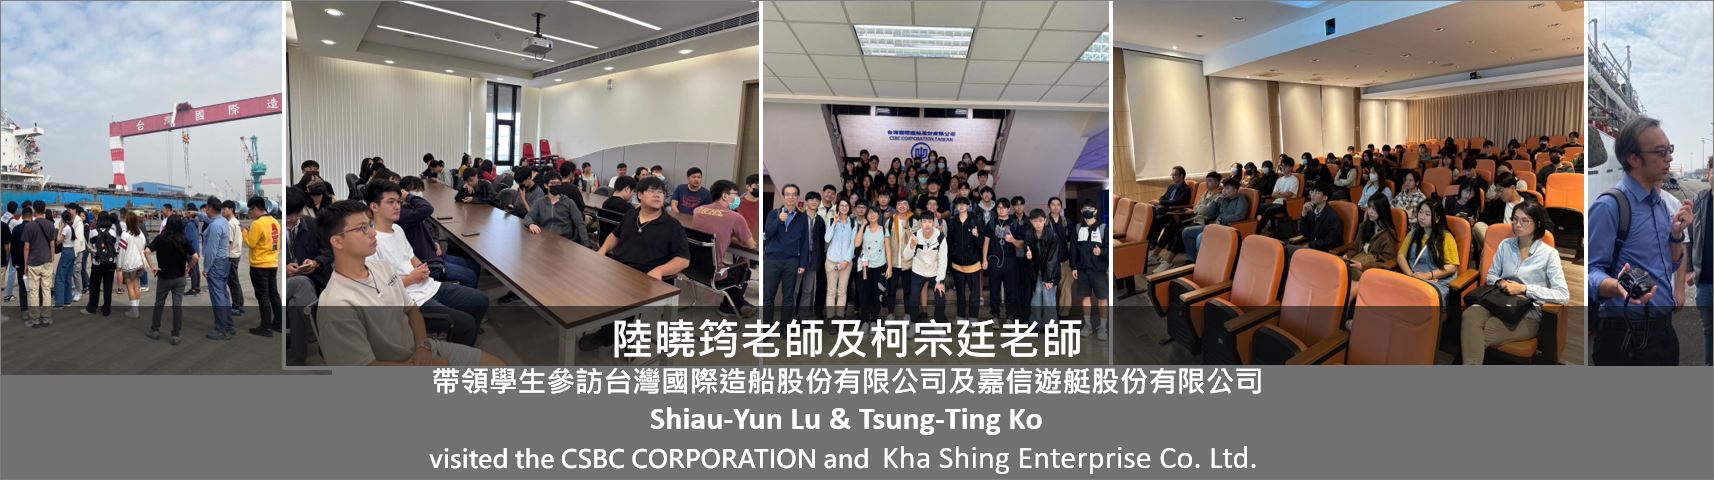 帶領學生參訪台灣國際造船股份有限公司及嘉信遊艇股份有限公司